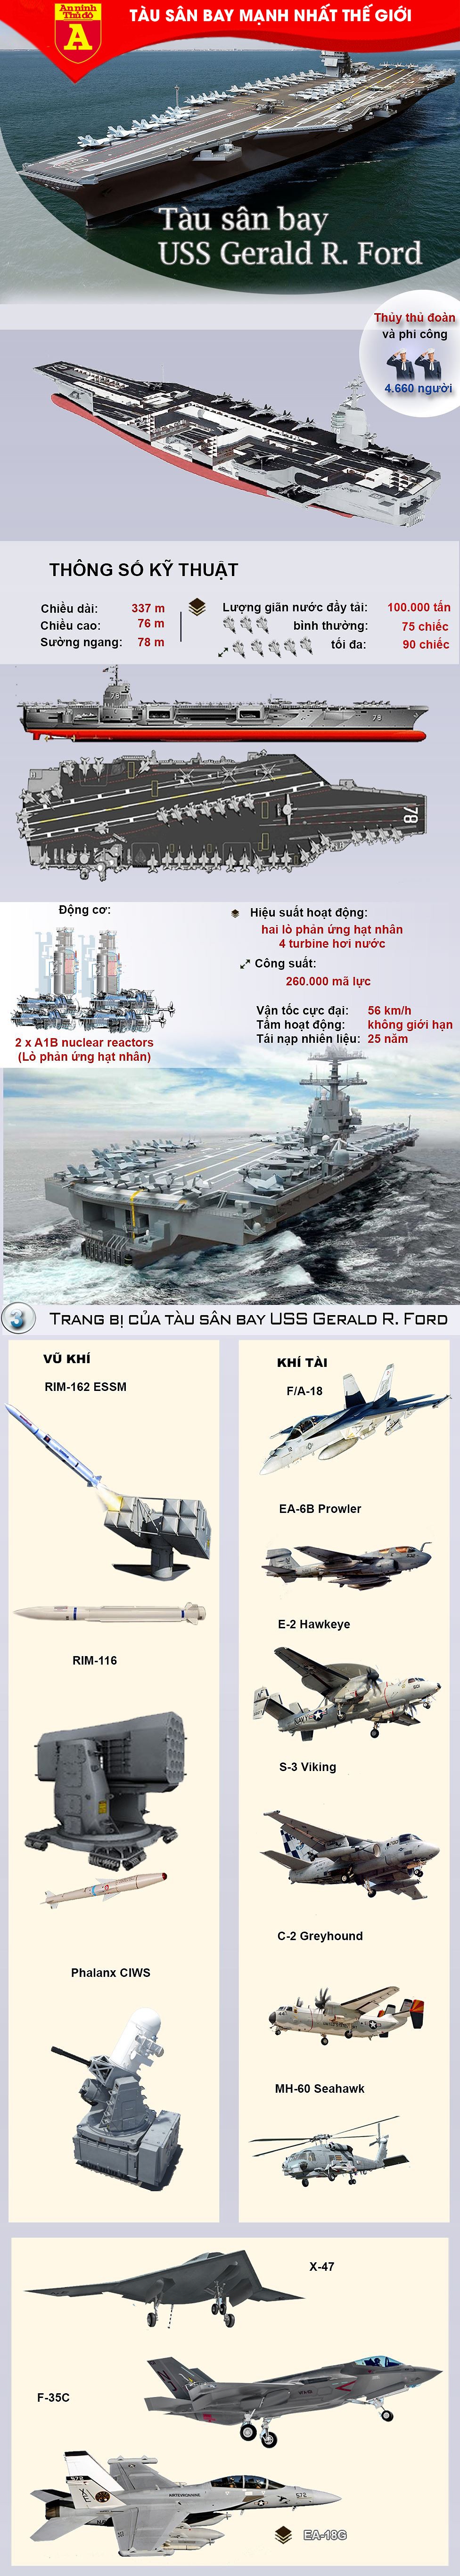 [Infographic] Nga, Trung mất vài chục nămnếu muốn chế tạo được siêu tàu sân bay lớp Ford như Mỹ ảnh 2